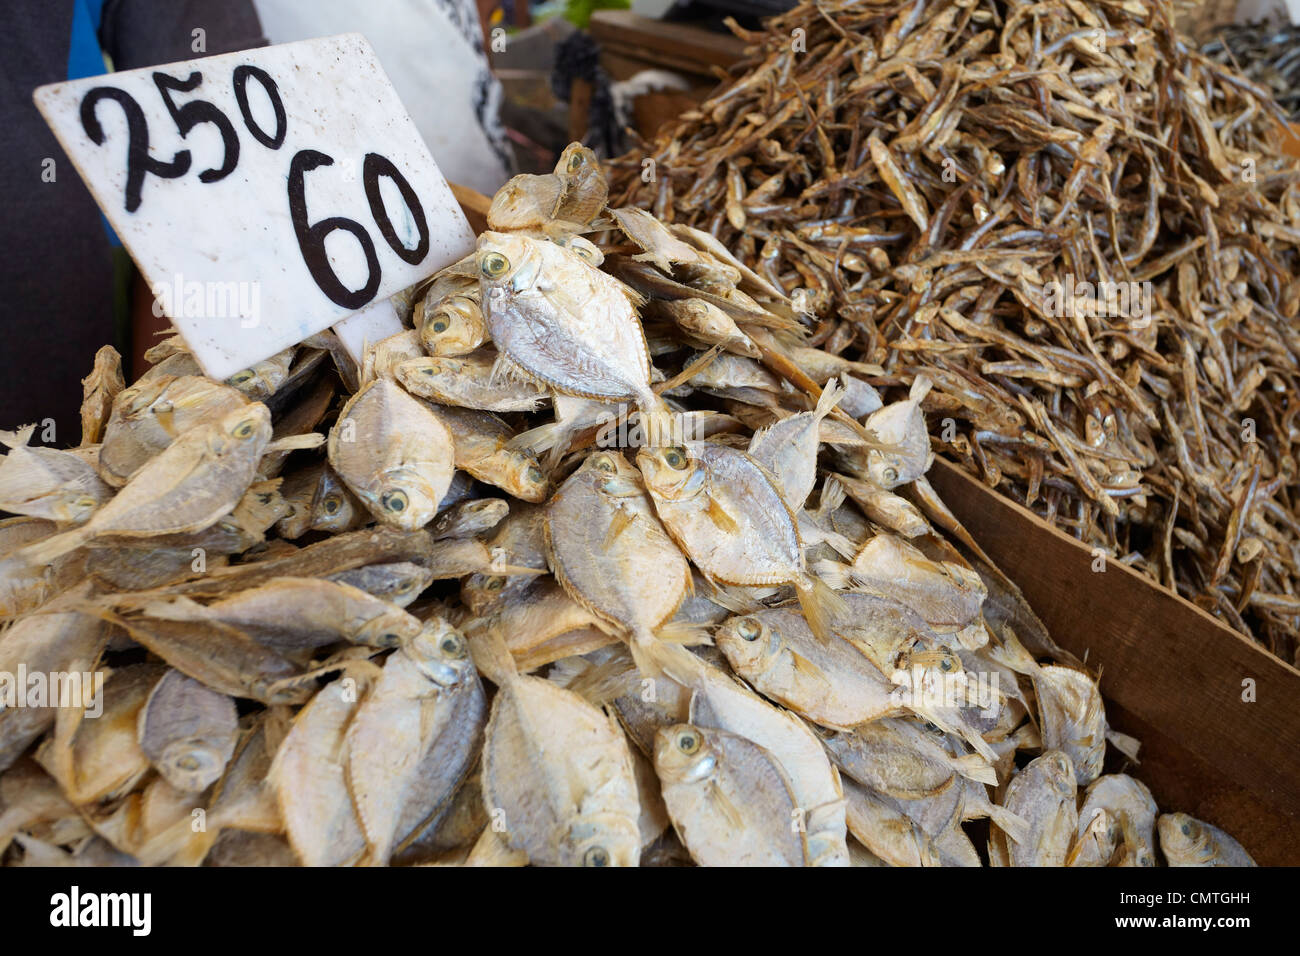 Sri Lanka - COLOMBO, séché et salé poisson au marché Banque D'Images